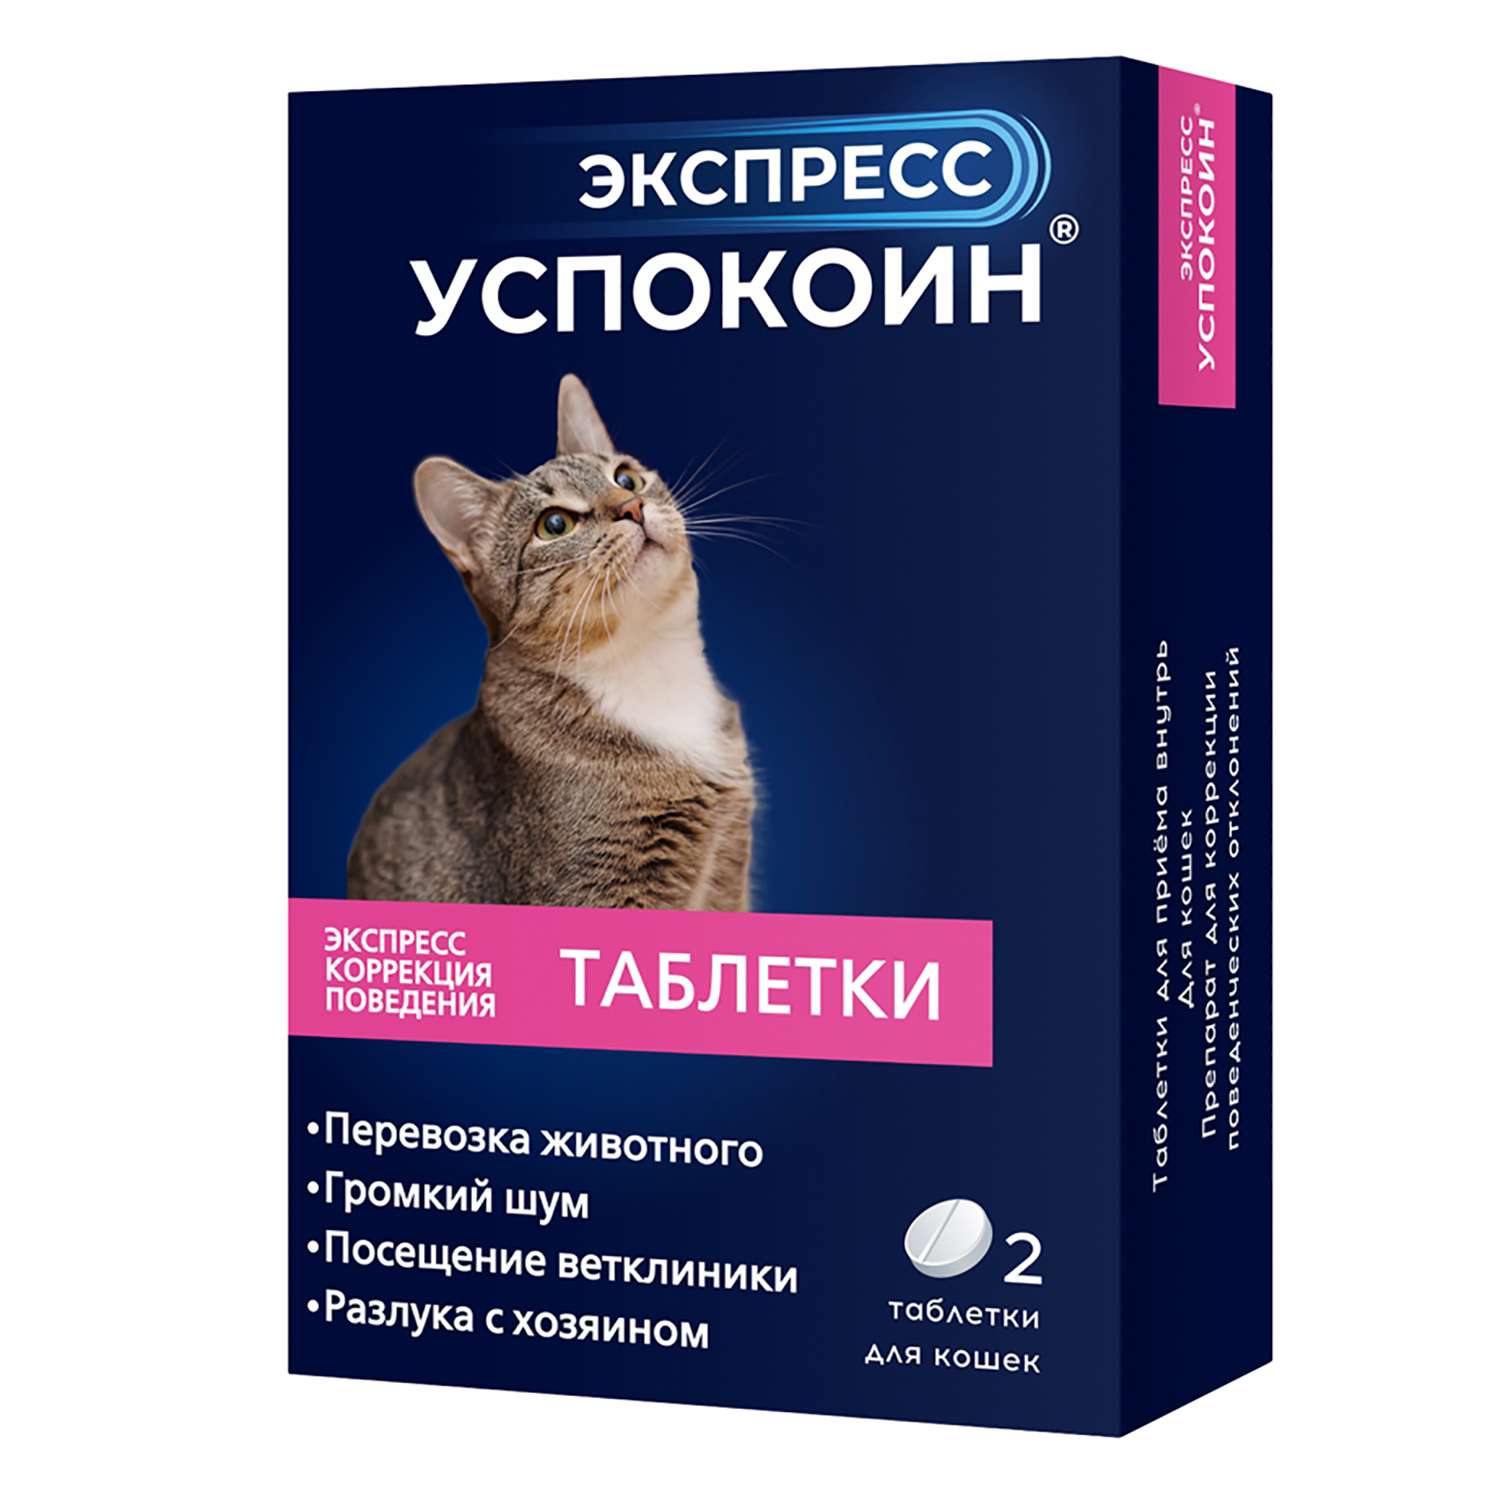 Успокоительное для кошек Астрафарм Экспресс Успокоин 2таблетки - фото 1